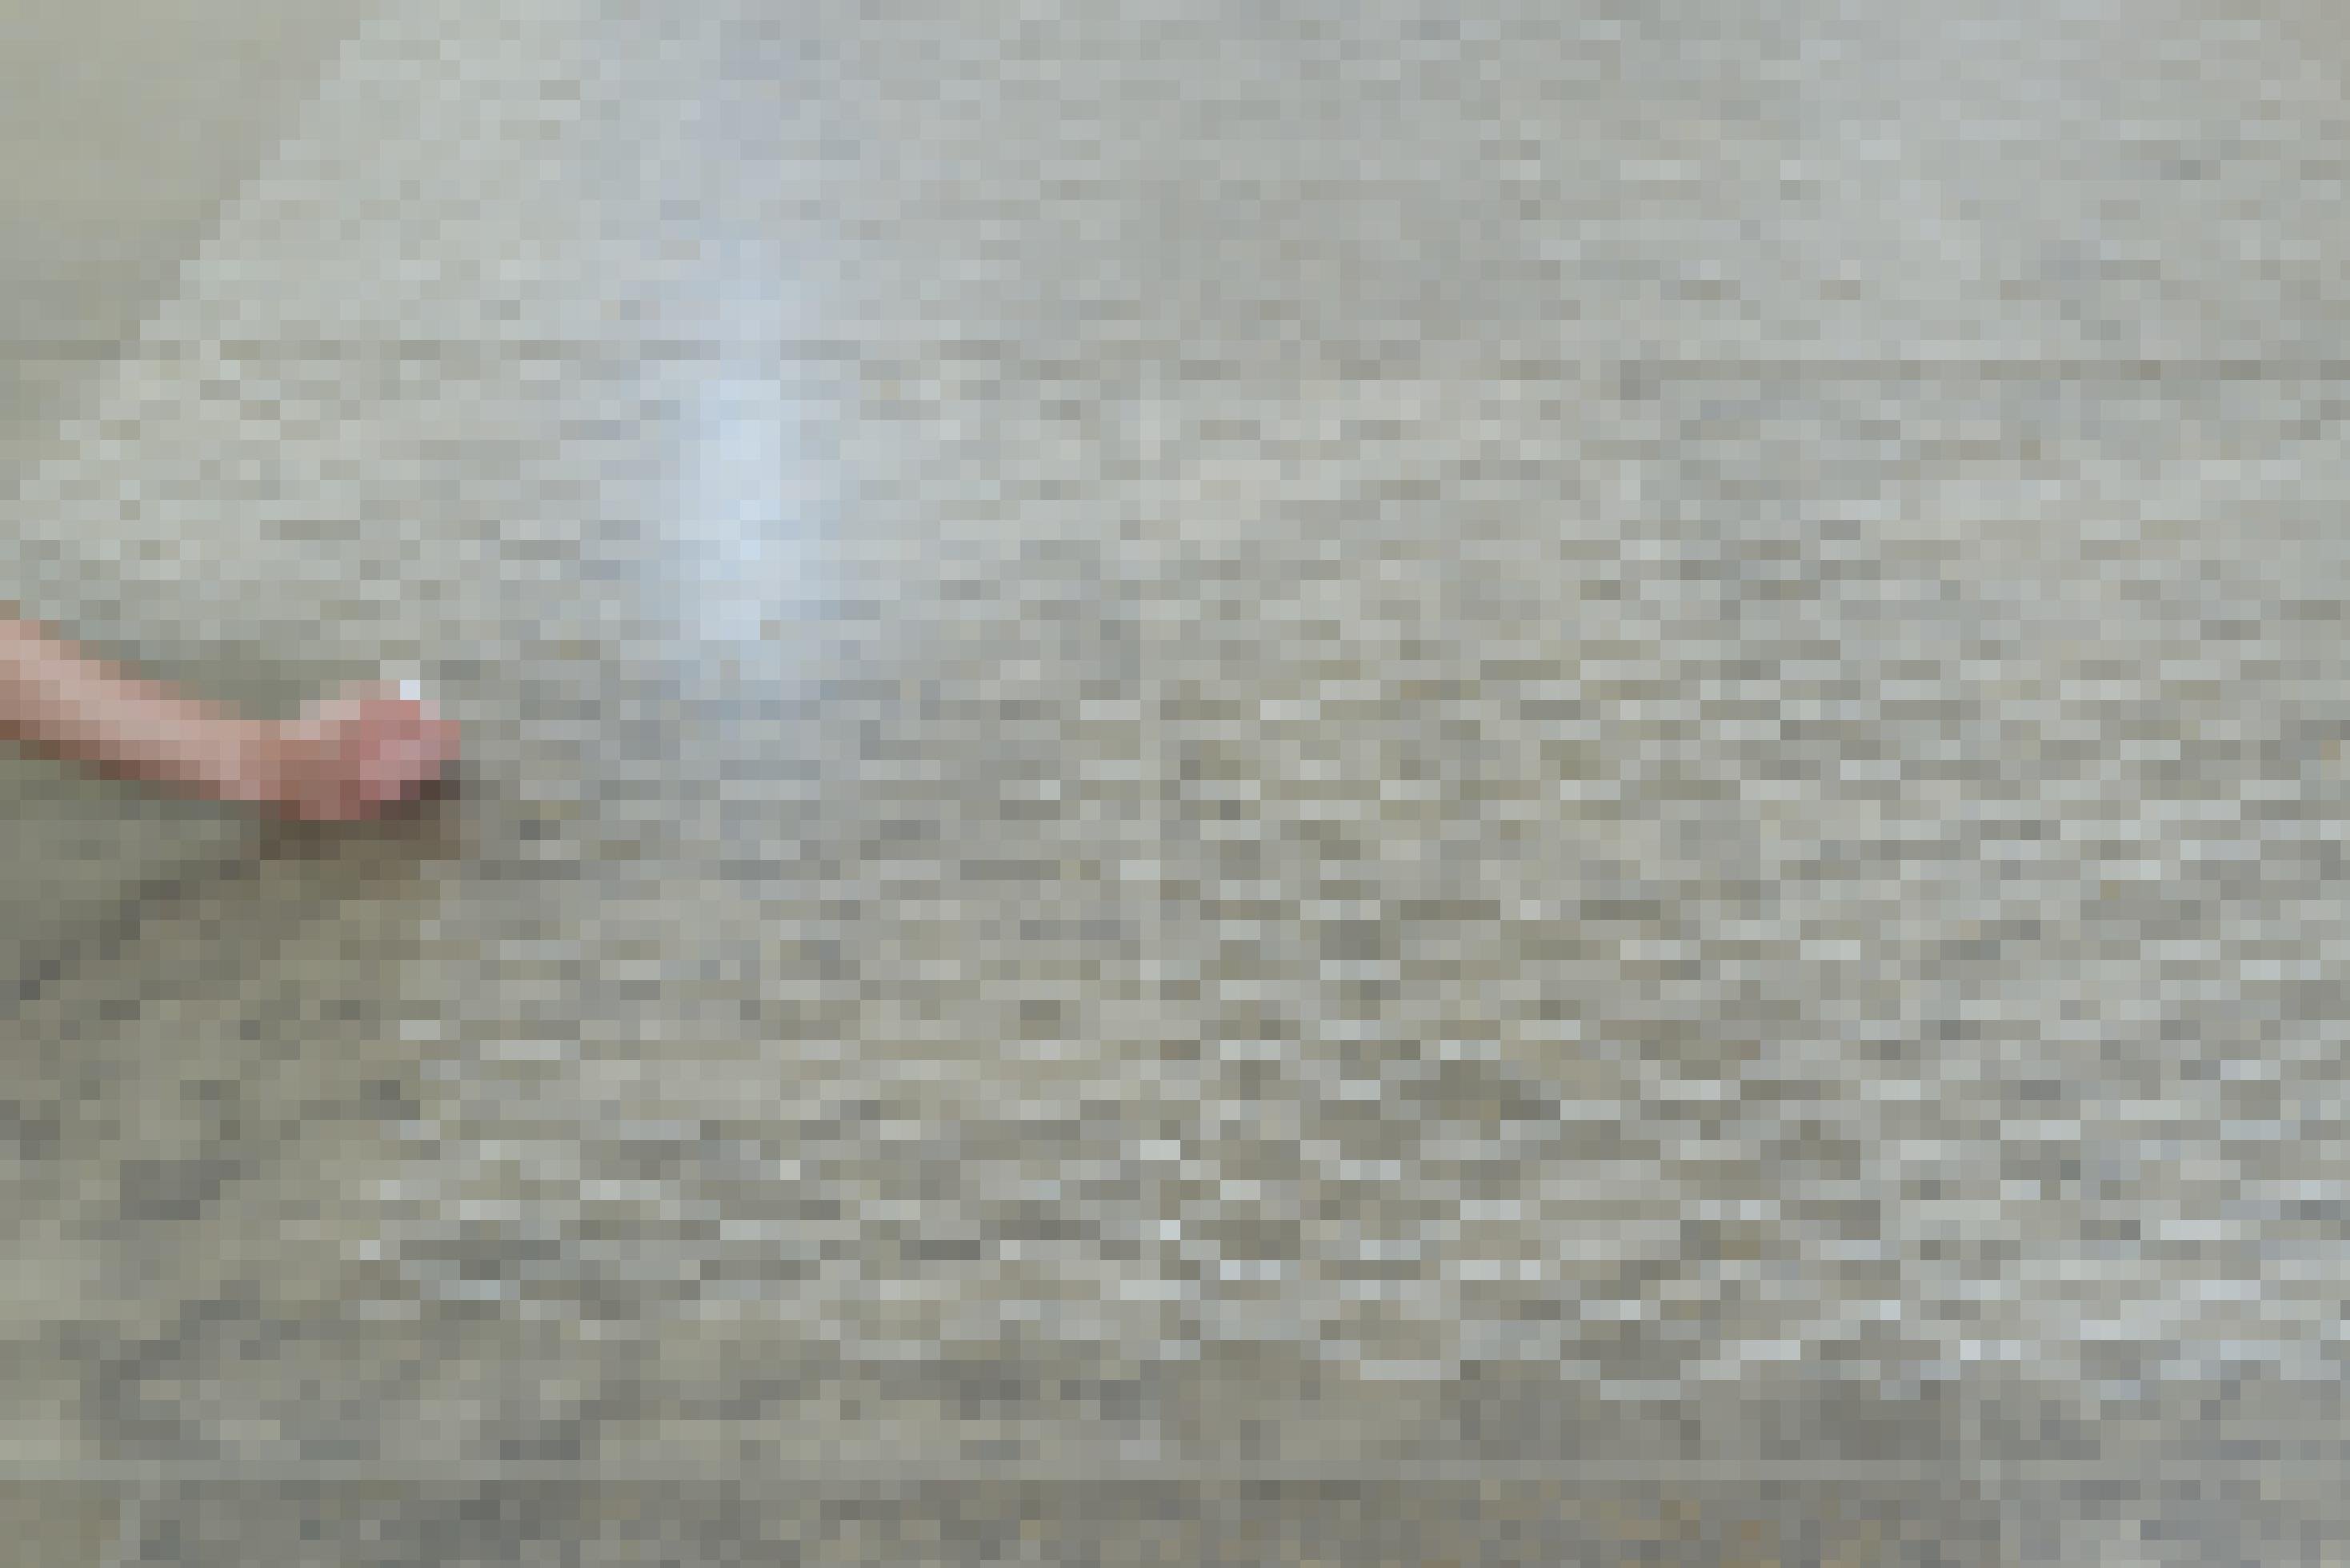 Foto eines Bodens aus glatten Steinplatten. Darauf ist ein Netzmuster mit weißer Kreide gemalt. Links im Bild sieht man eine Hand mit Kreide, welche das Muster weiterführt.